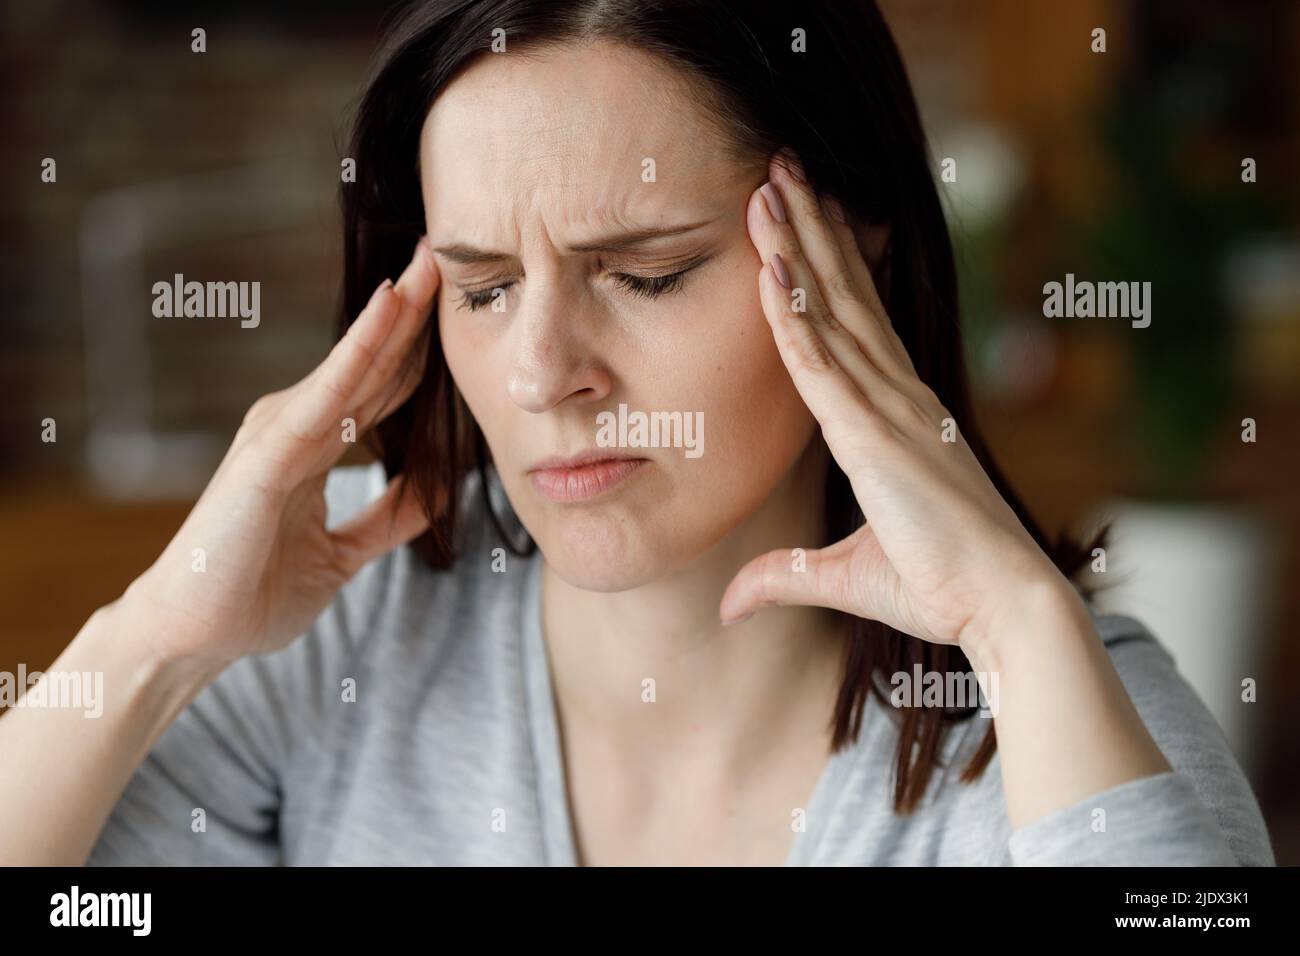 Verärgerte junge Frau, die unter Kopfschmerzen leidet. Erschöpfte Frau mit geschlossenen Augen massiert die Schläfen mit schmerzhaften Empfindungen. Migräne, hohes Blut Stockfoto